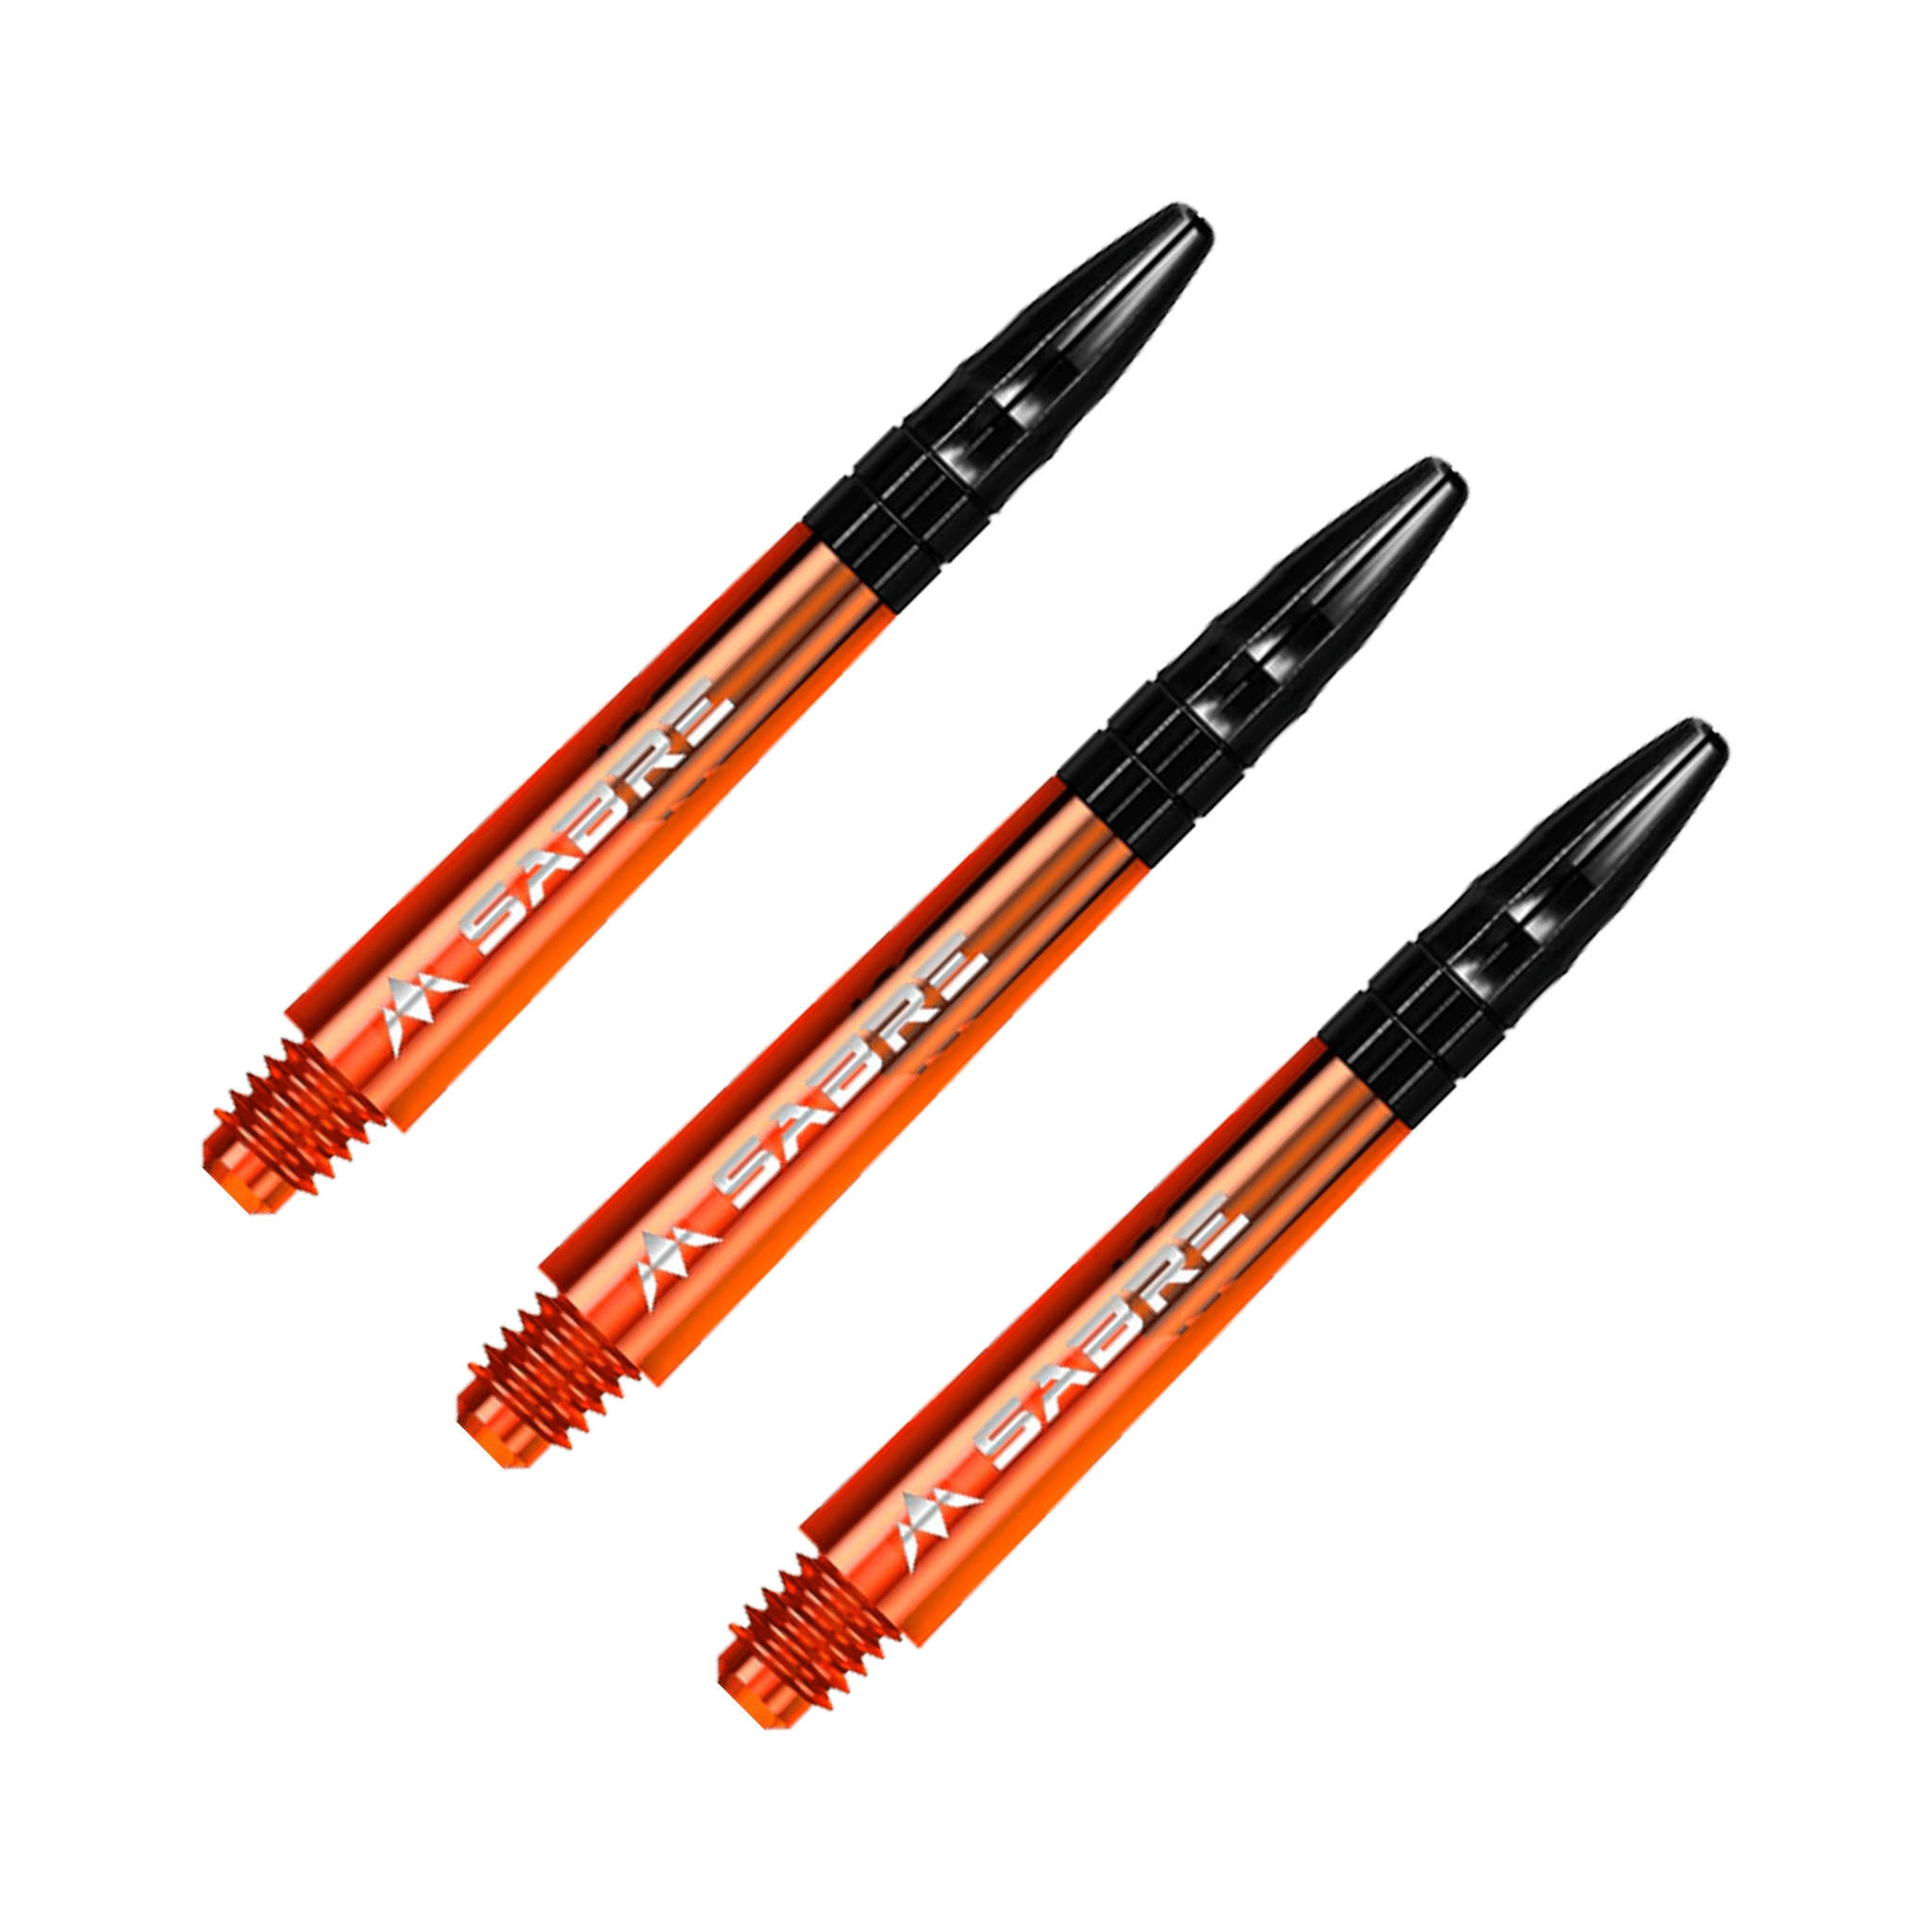 Mission Sabre - Polycarbonate Dart Shafts Midi (40mm) / Orange & Black Shafts